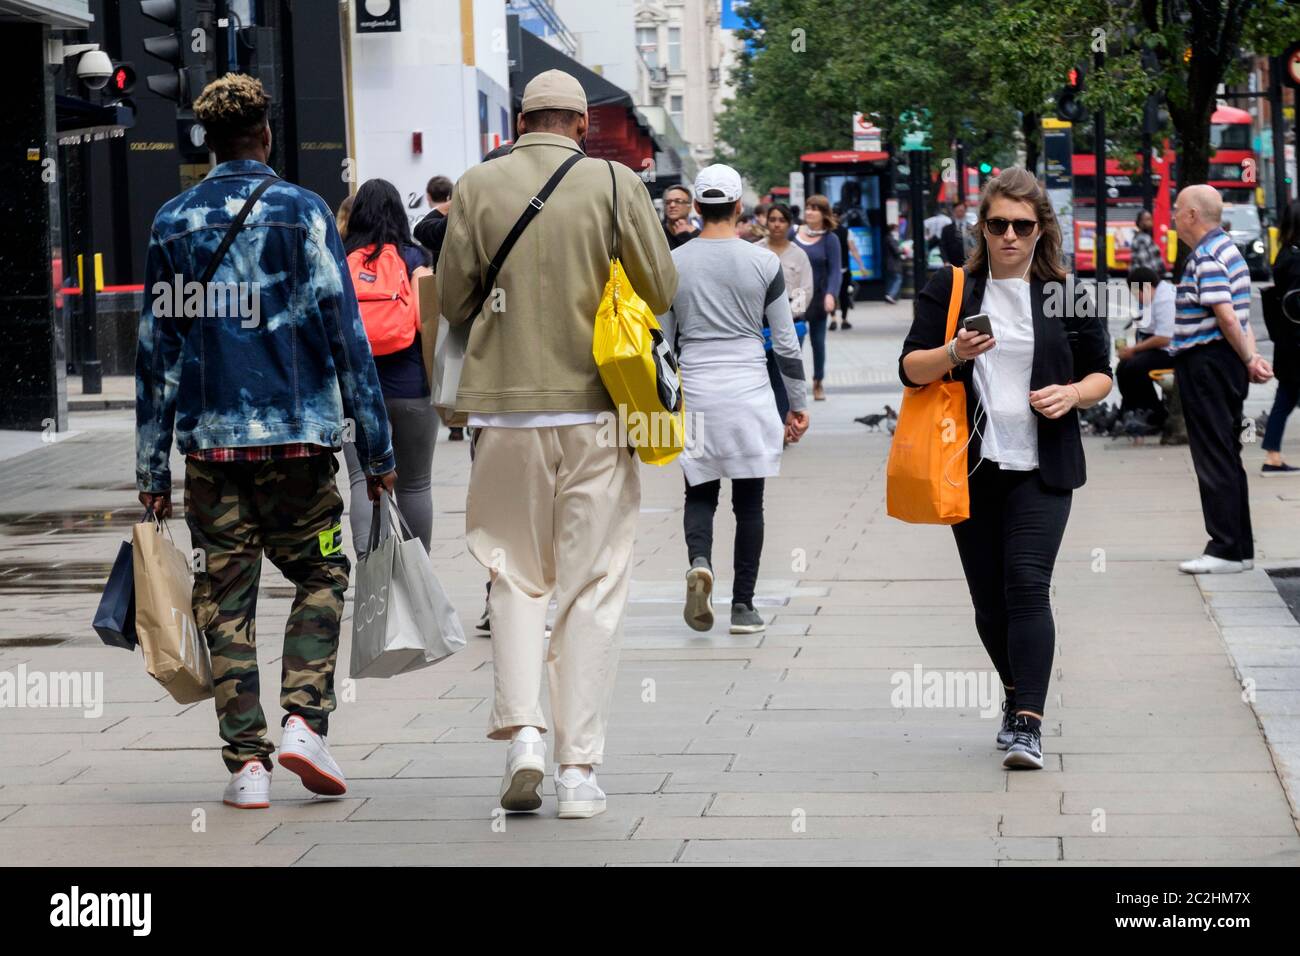 Juni 2020. Einkäufer in der Oxford Street, London, nachdem die Regierung die Lockerung der Covid-19-Sperrmaßnahmen in England eingeleitet hatte, die es nicht unbedingt notwendigen Einzelhandelsgeschäften ermöglichen, wieder zu öffnen. Stockfoto